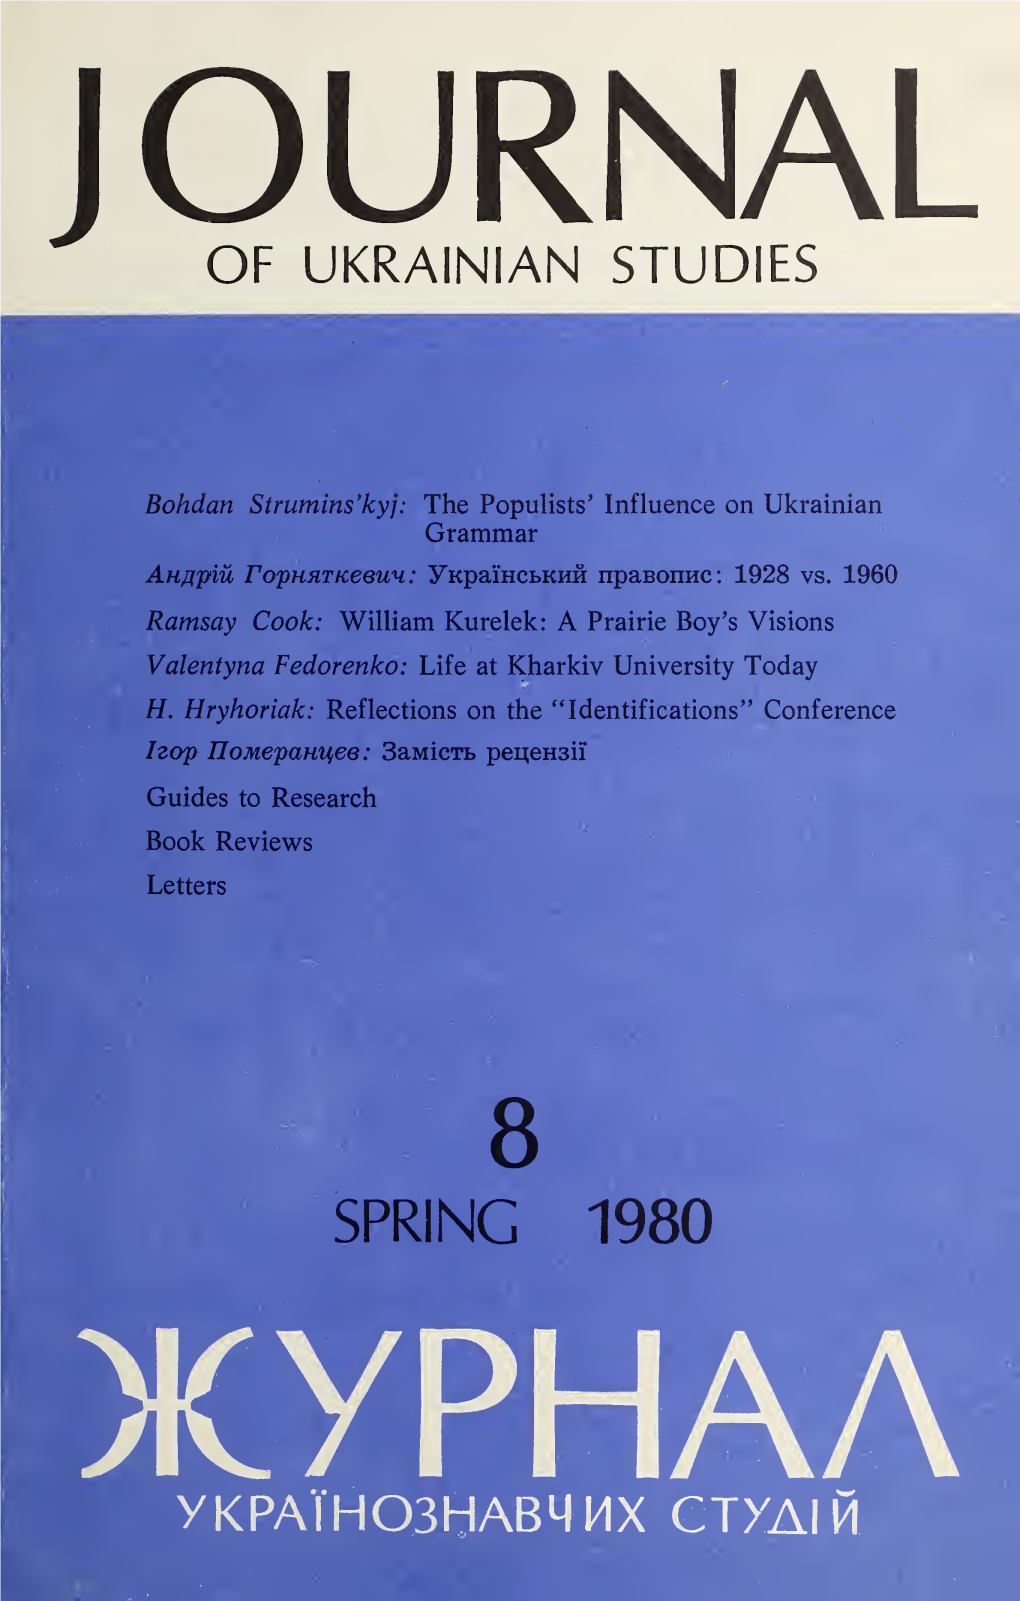 Journal of Ukrainian Studies 8